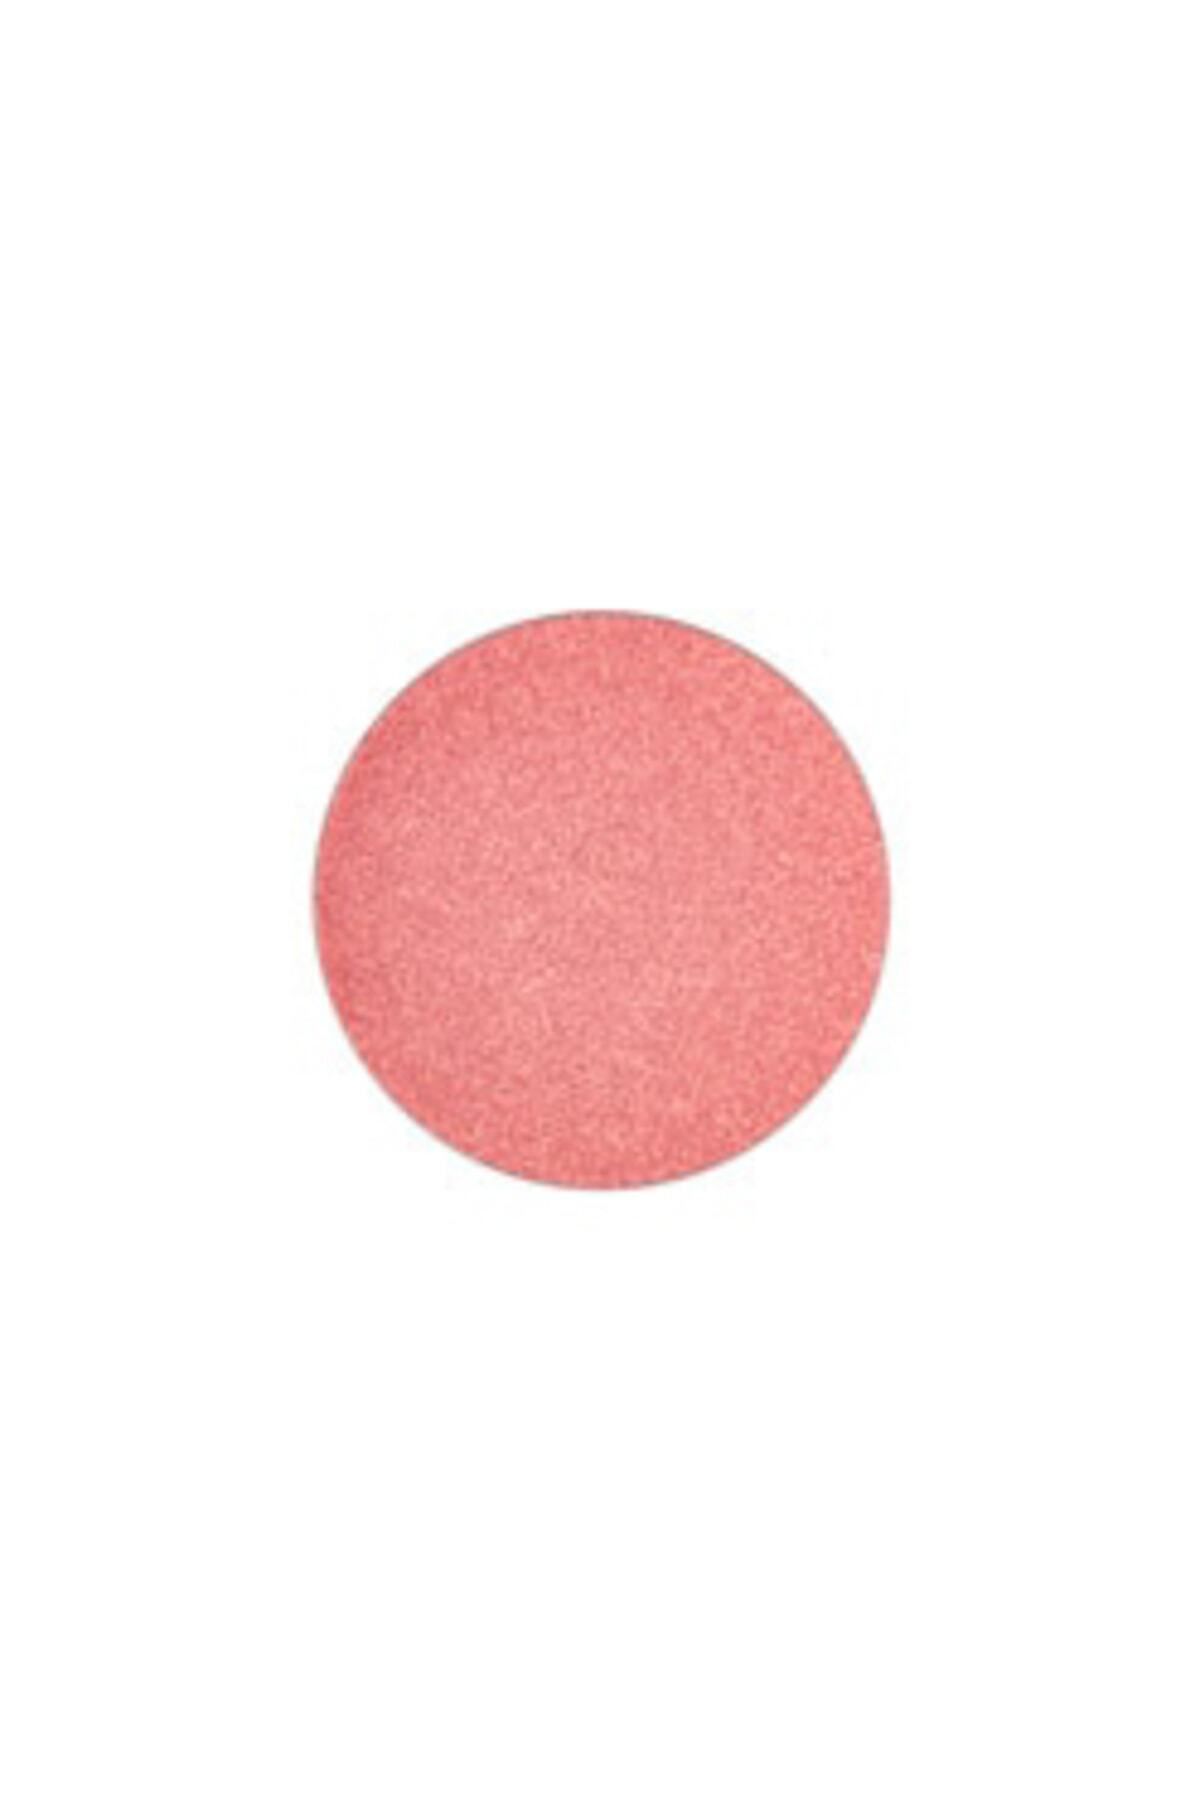 Mac Göz Farı - Refill Far In Living Pink 773602572854